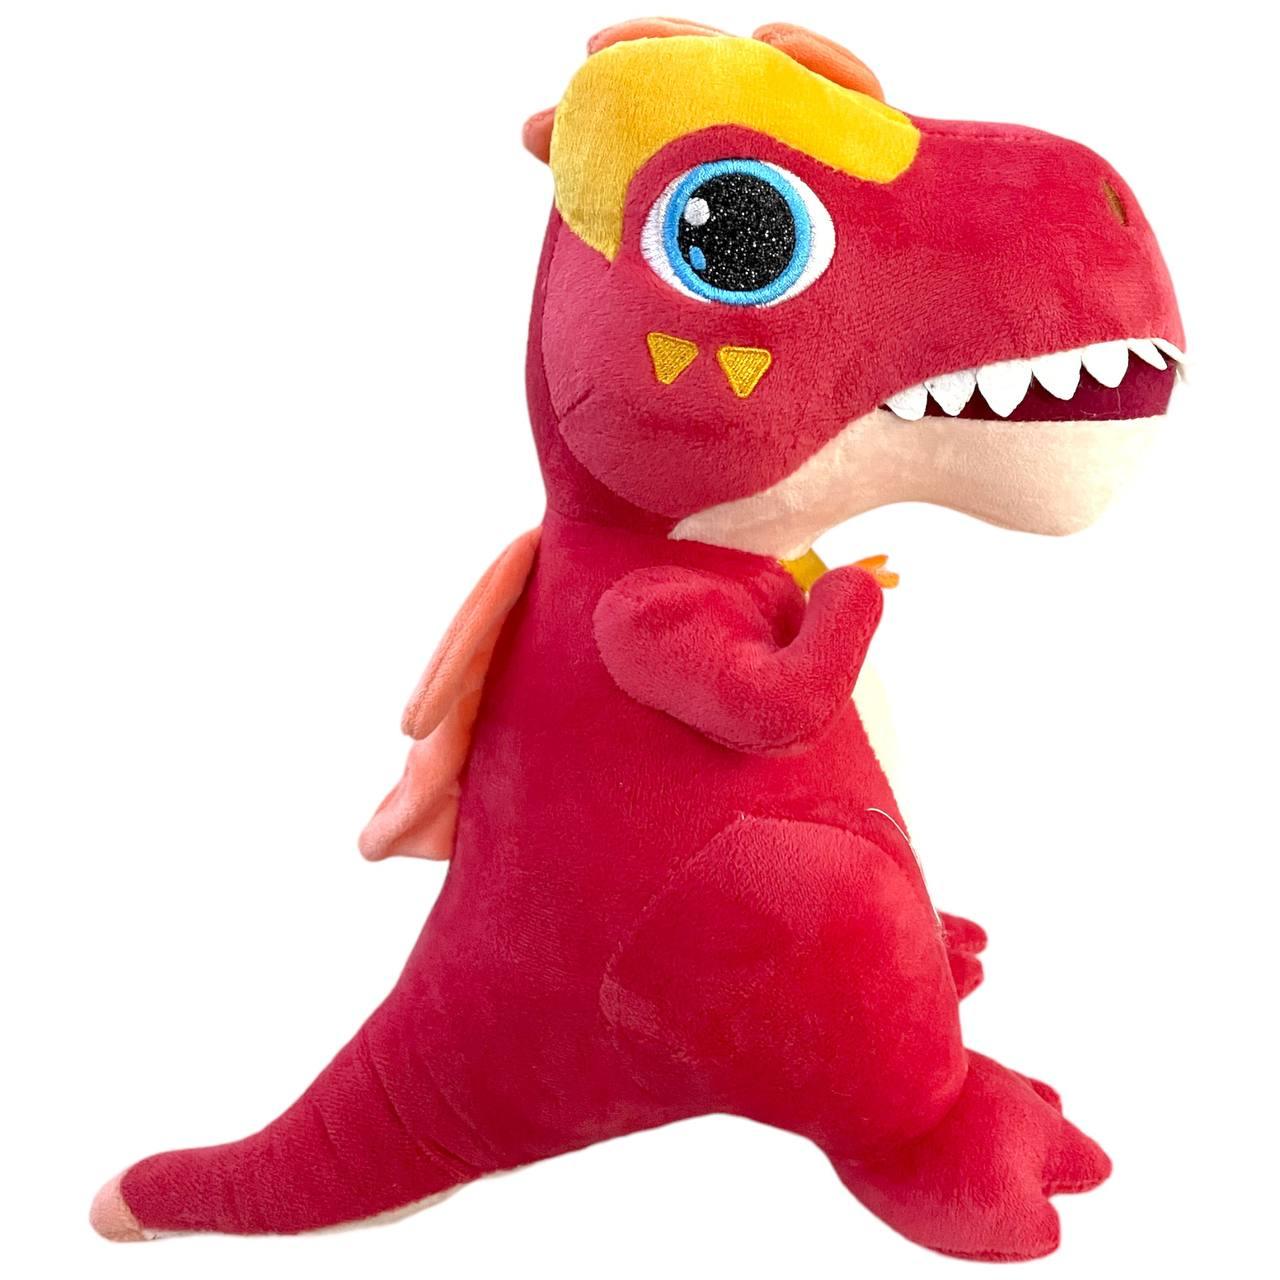 30см Динозавр красный с большими глазами (качественный)